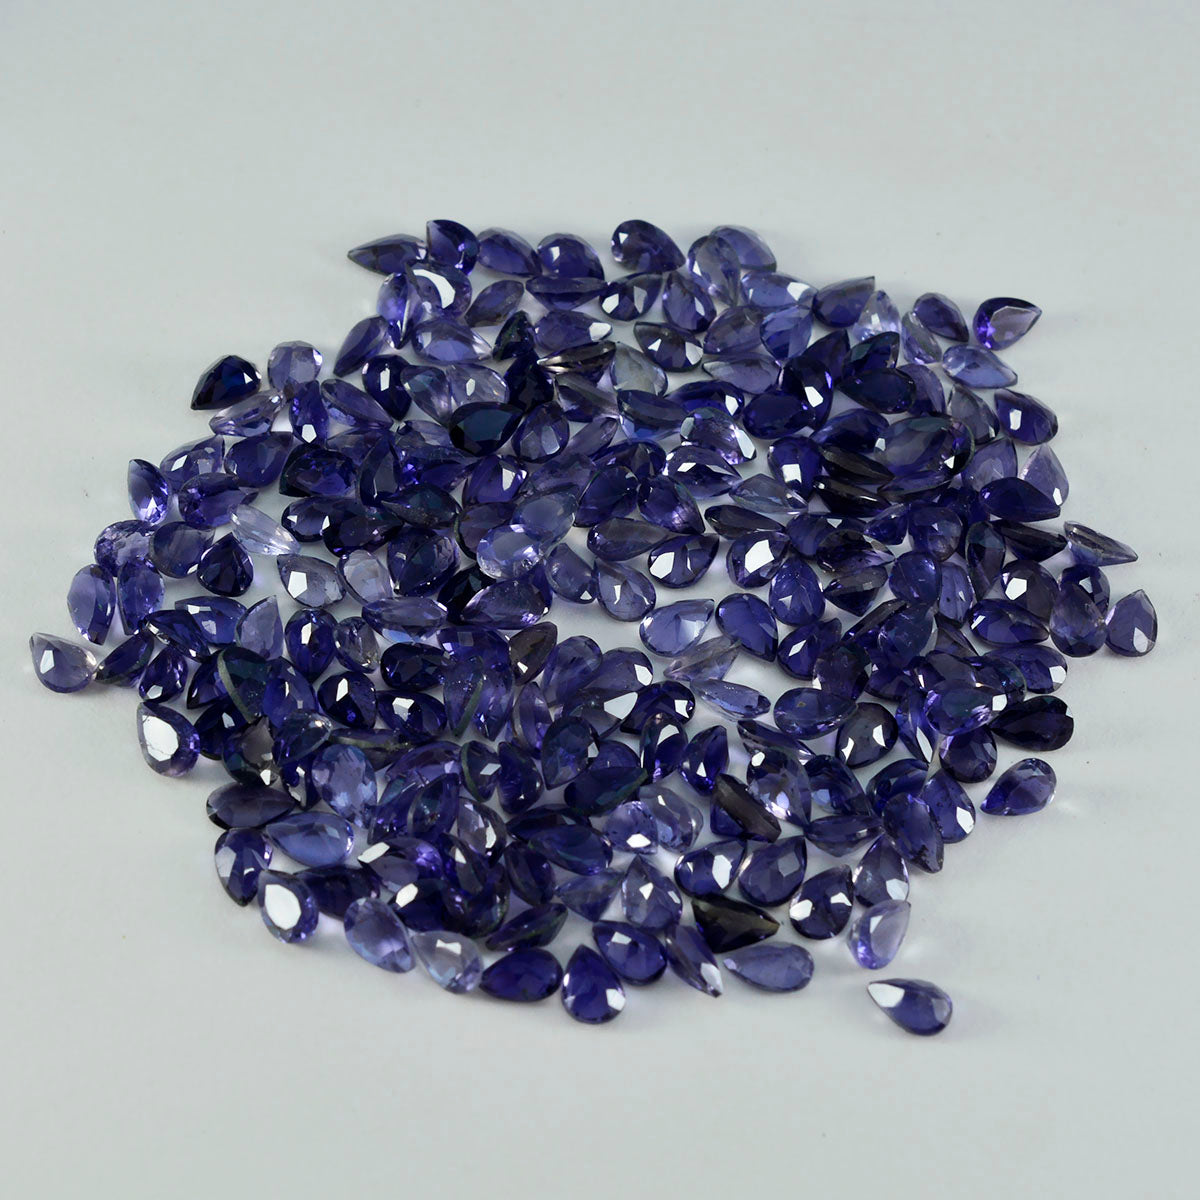 Riyogems 1 pièce d'iolite bleue à facettes 3x5mm en forme de poire, pierres précieuses de bonne qualité